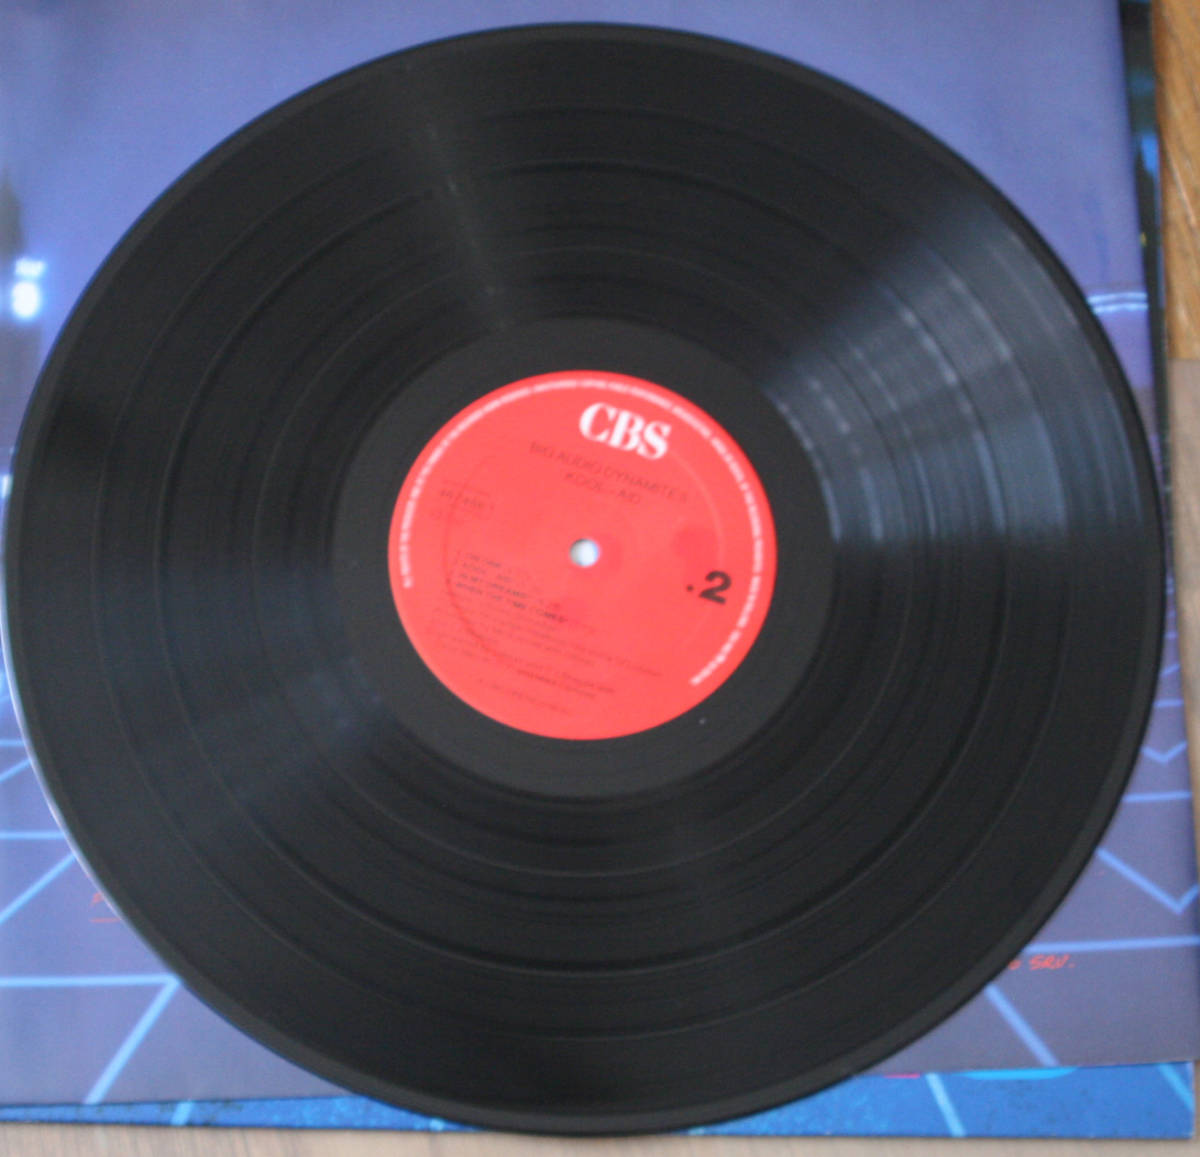 BIG AUDIO DYNAMITE II - Kool-Aid / Limited LP / B.A.D. / Clash, Mick Jones, New Wave, Punk_画像4